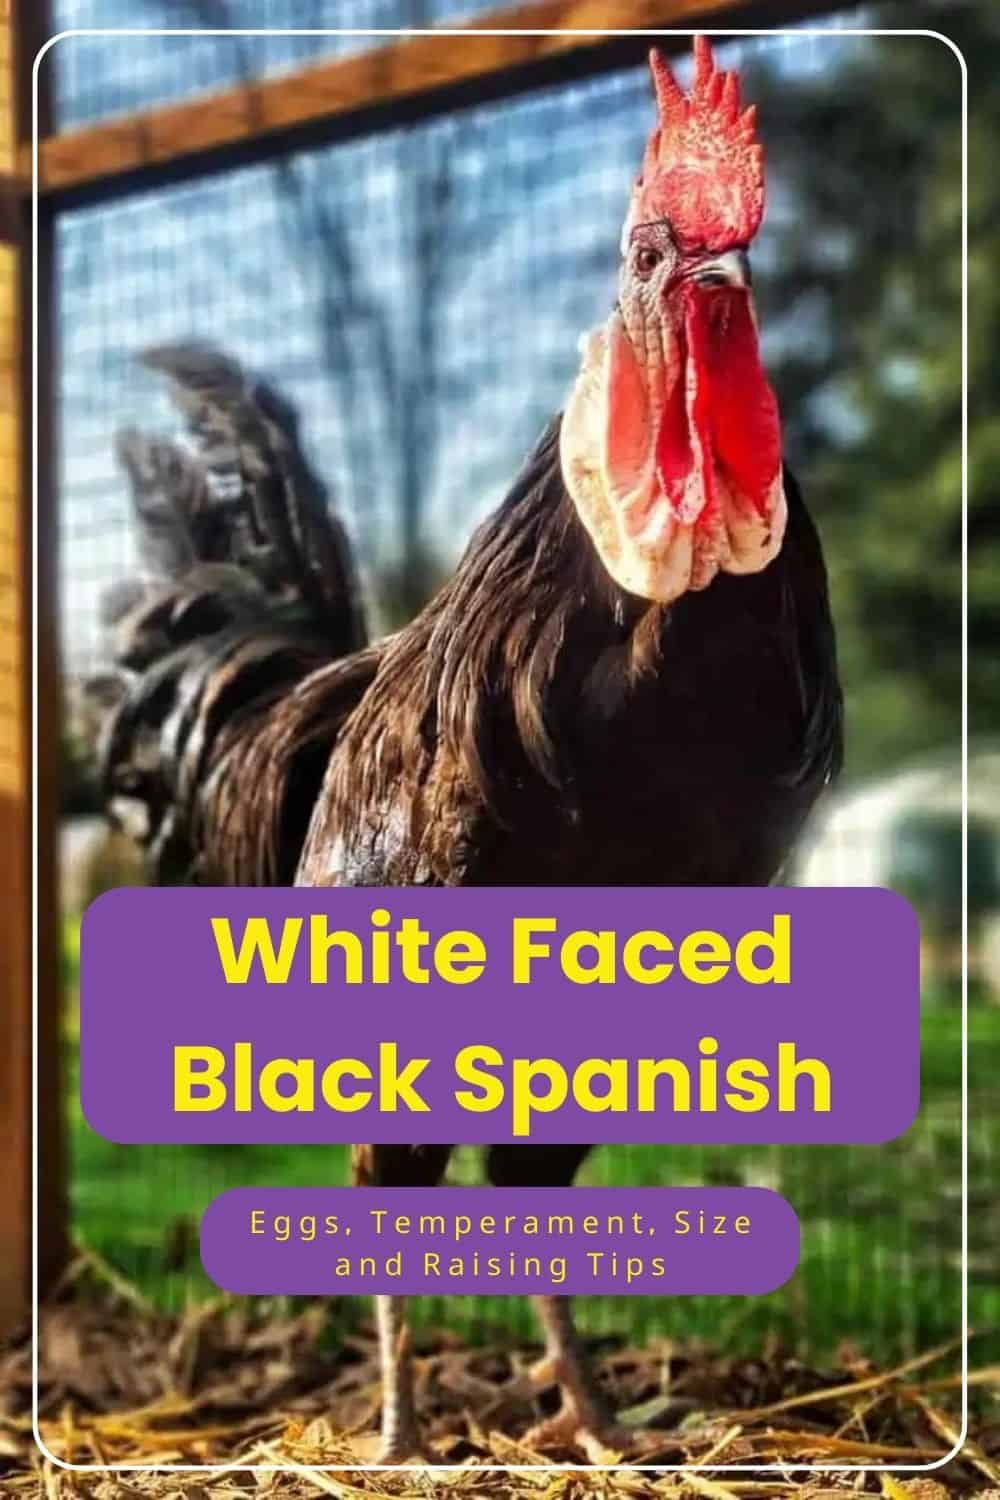 White Faced Black Spanish chicken